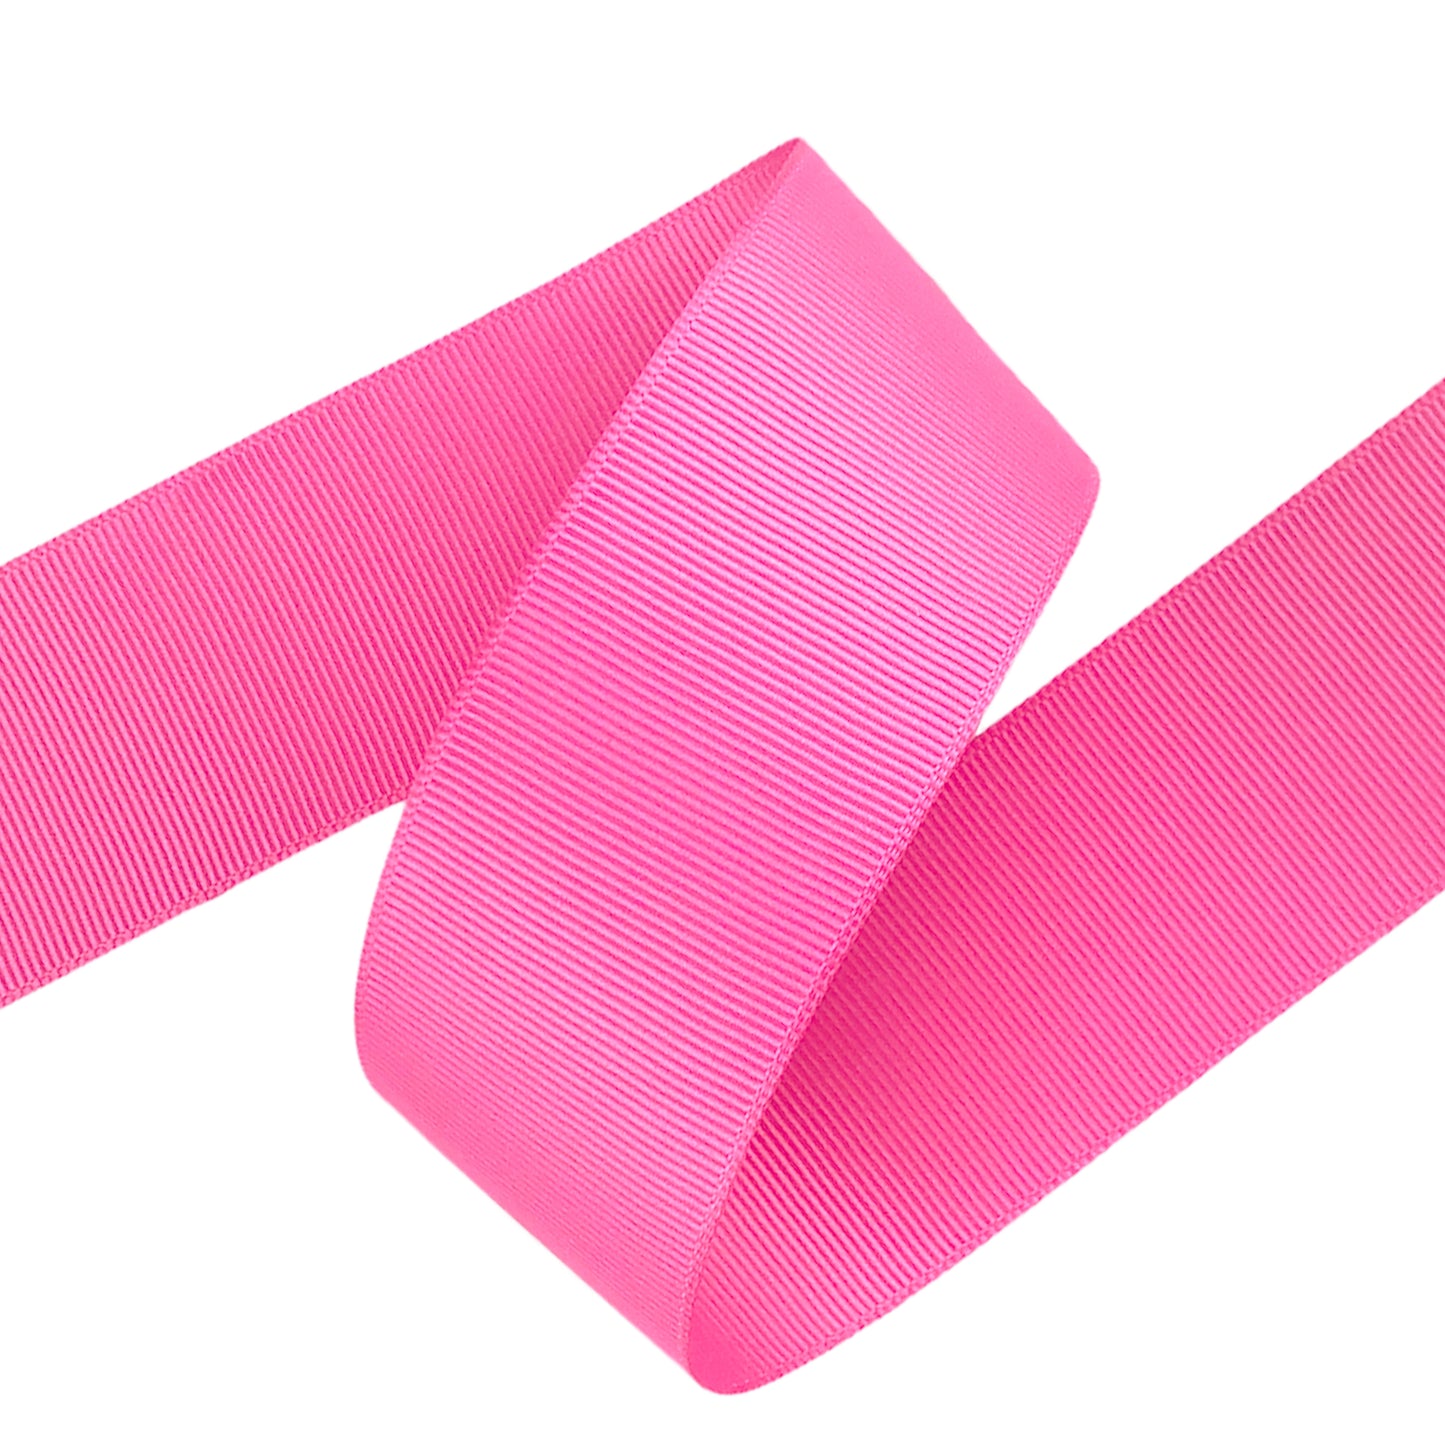 Hot Pink Grosgrain Ribbon